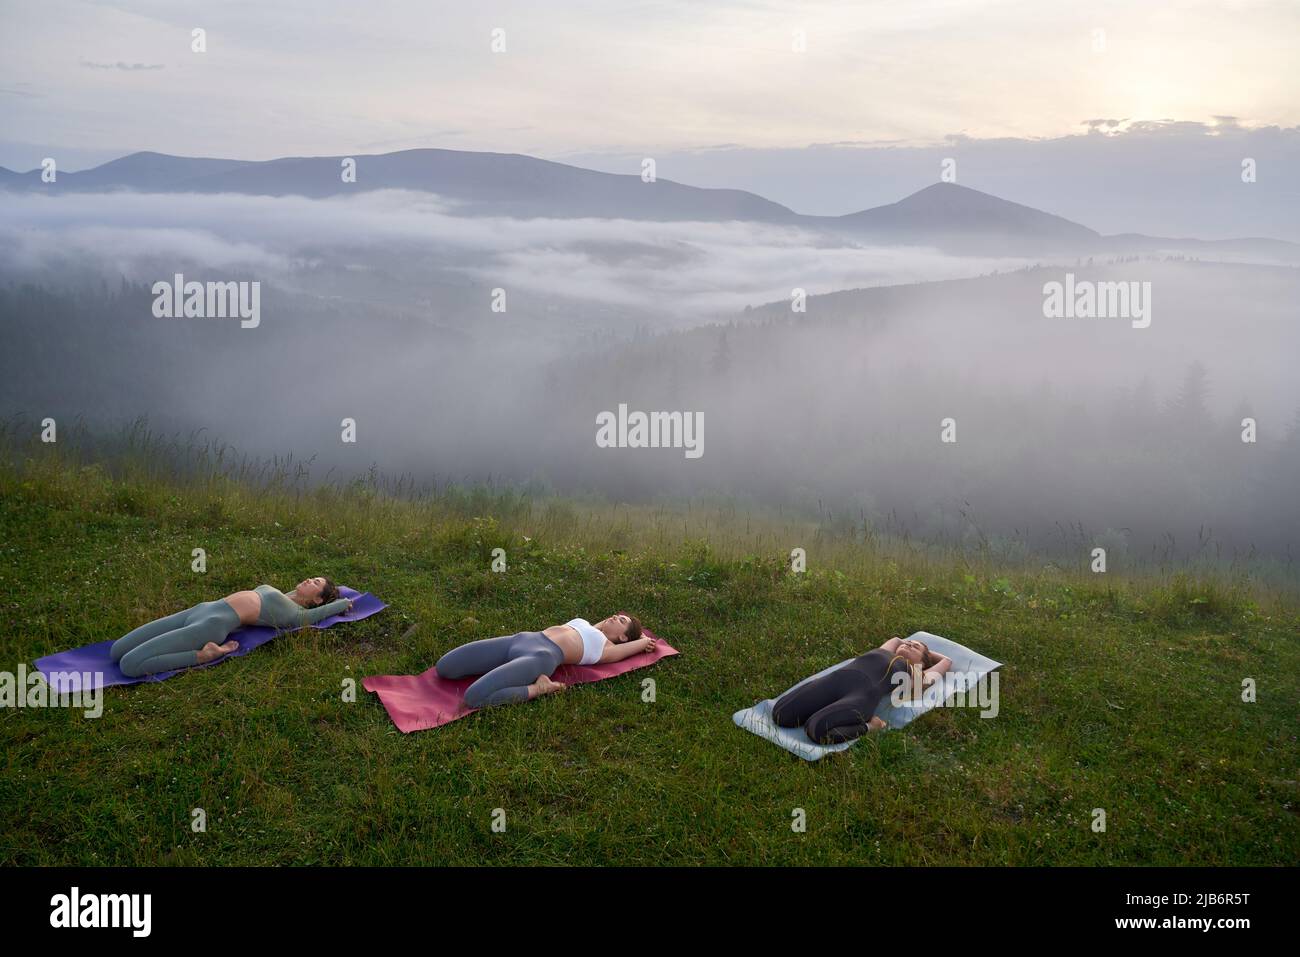 Drei junge Frauen in Sportkleidung liegen auf einer Yogamatte, während sie während des Trainings den Körper strecken. Aktive Frauen, die in der Freizeit im Freien trainieren. Stockfoto